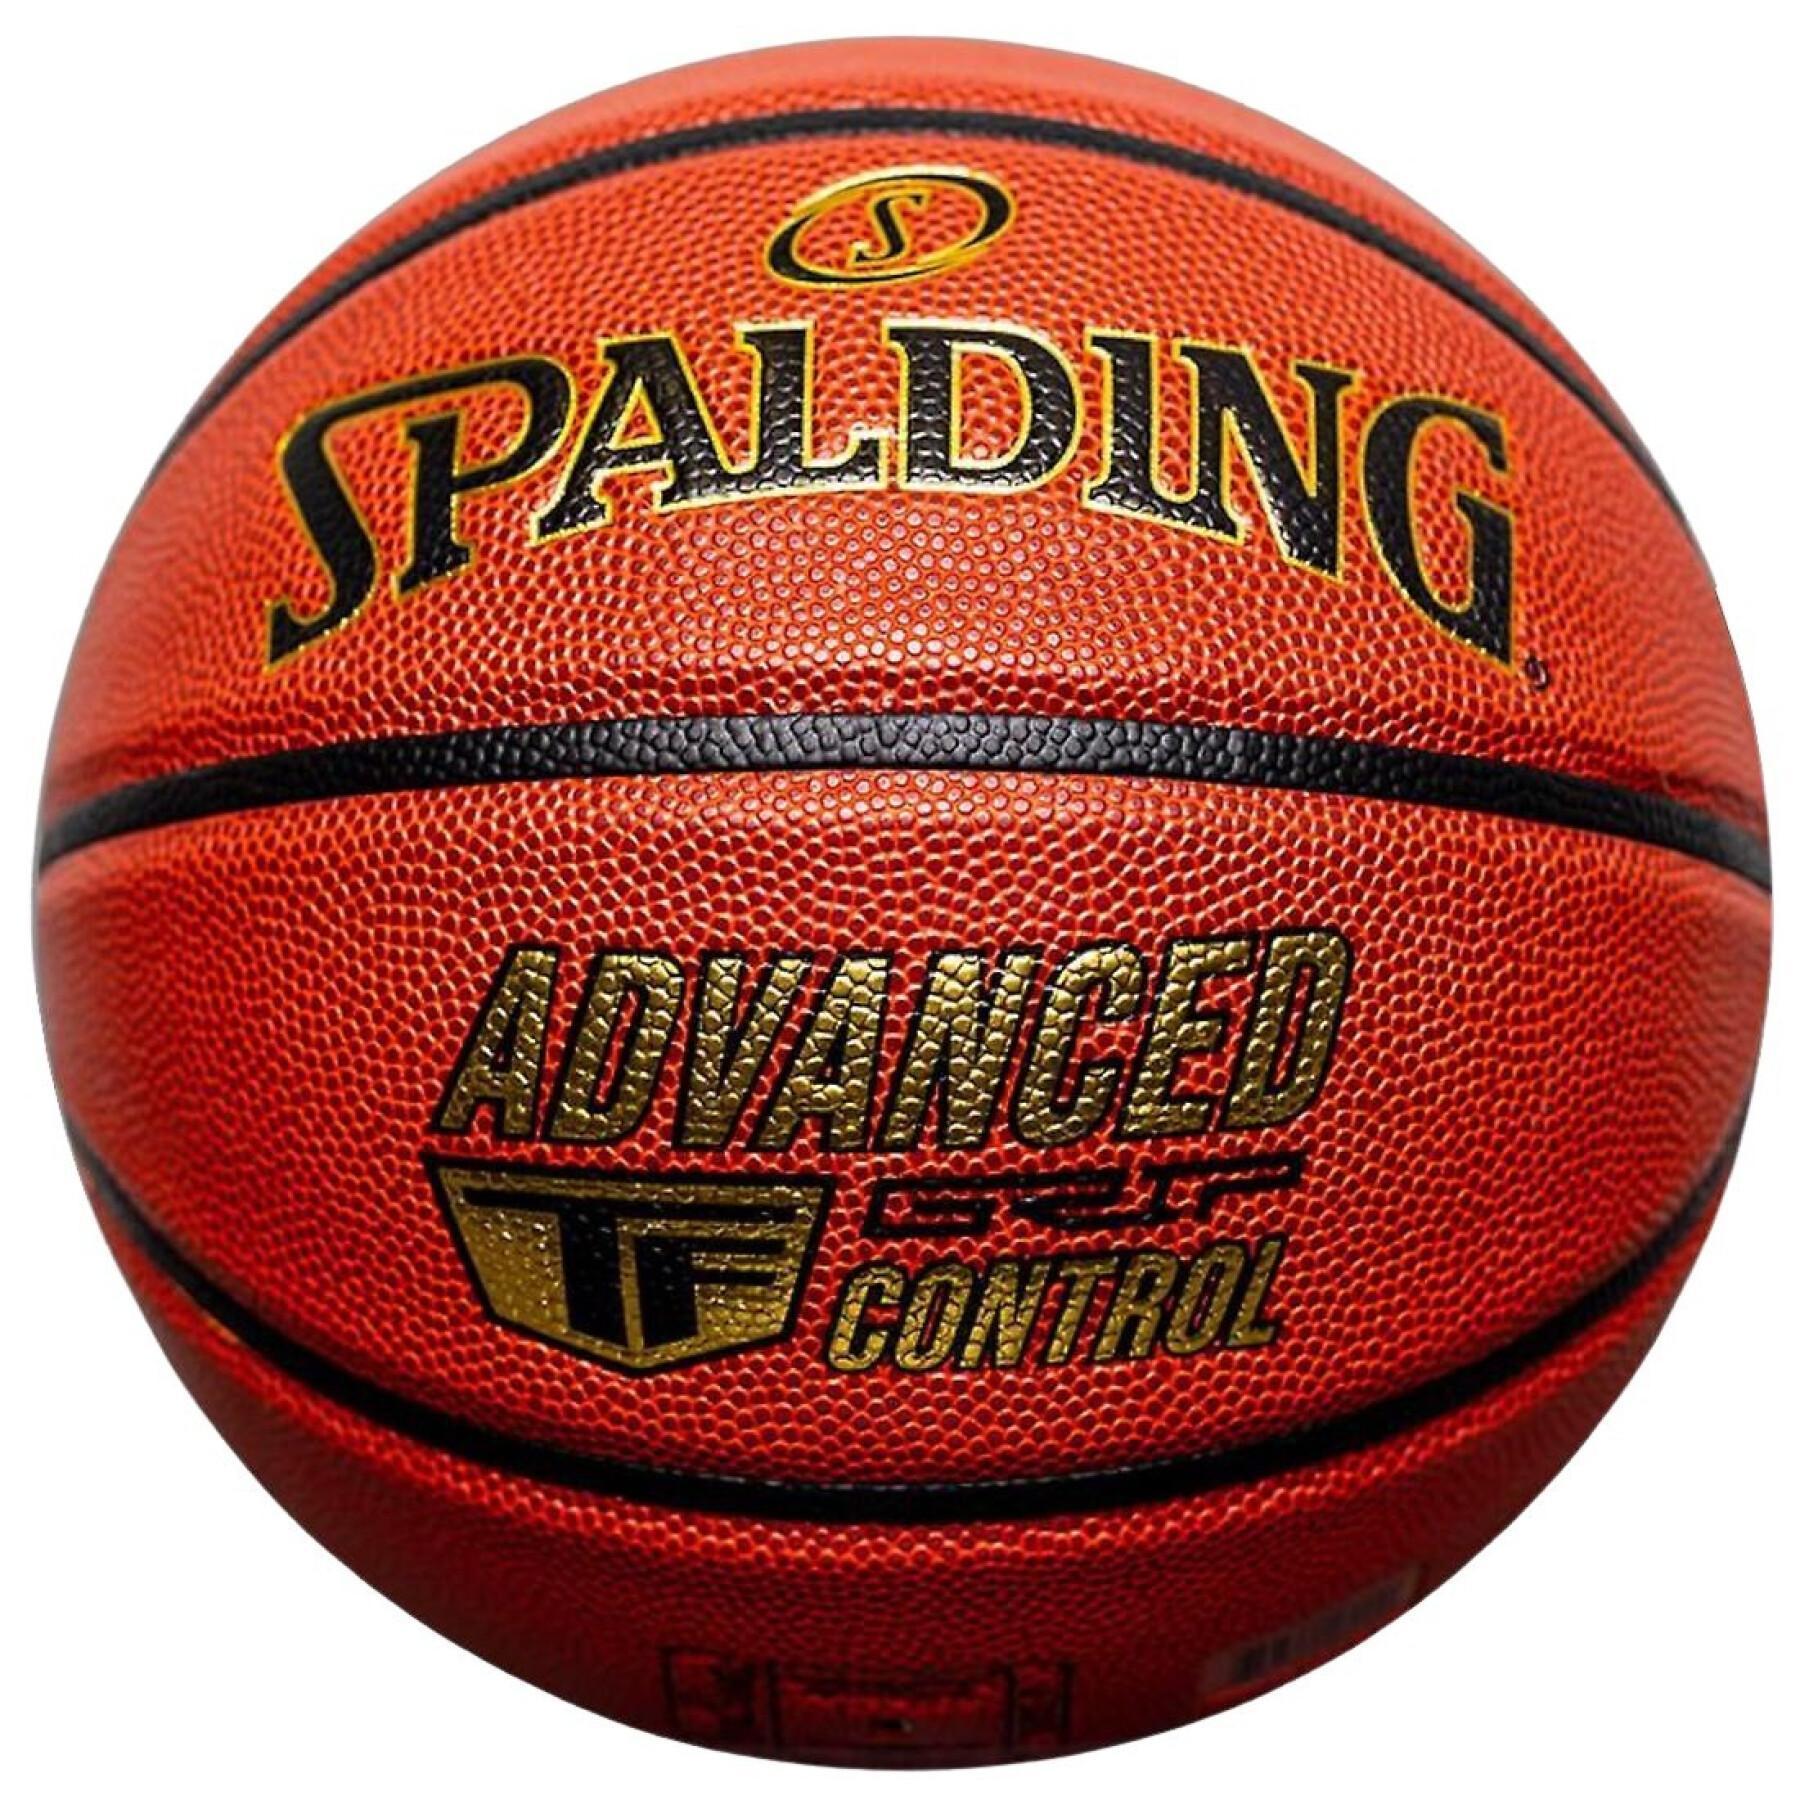 Ballong Spalding AGC Composite